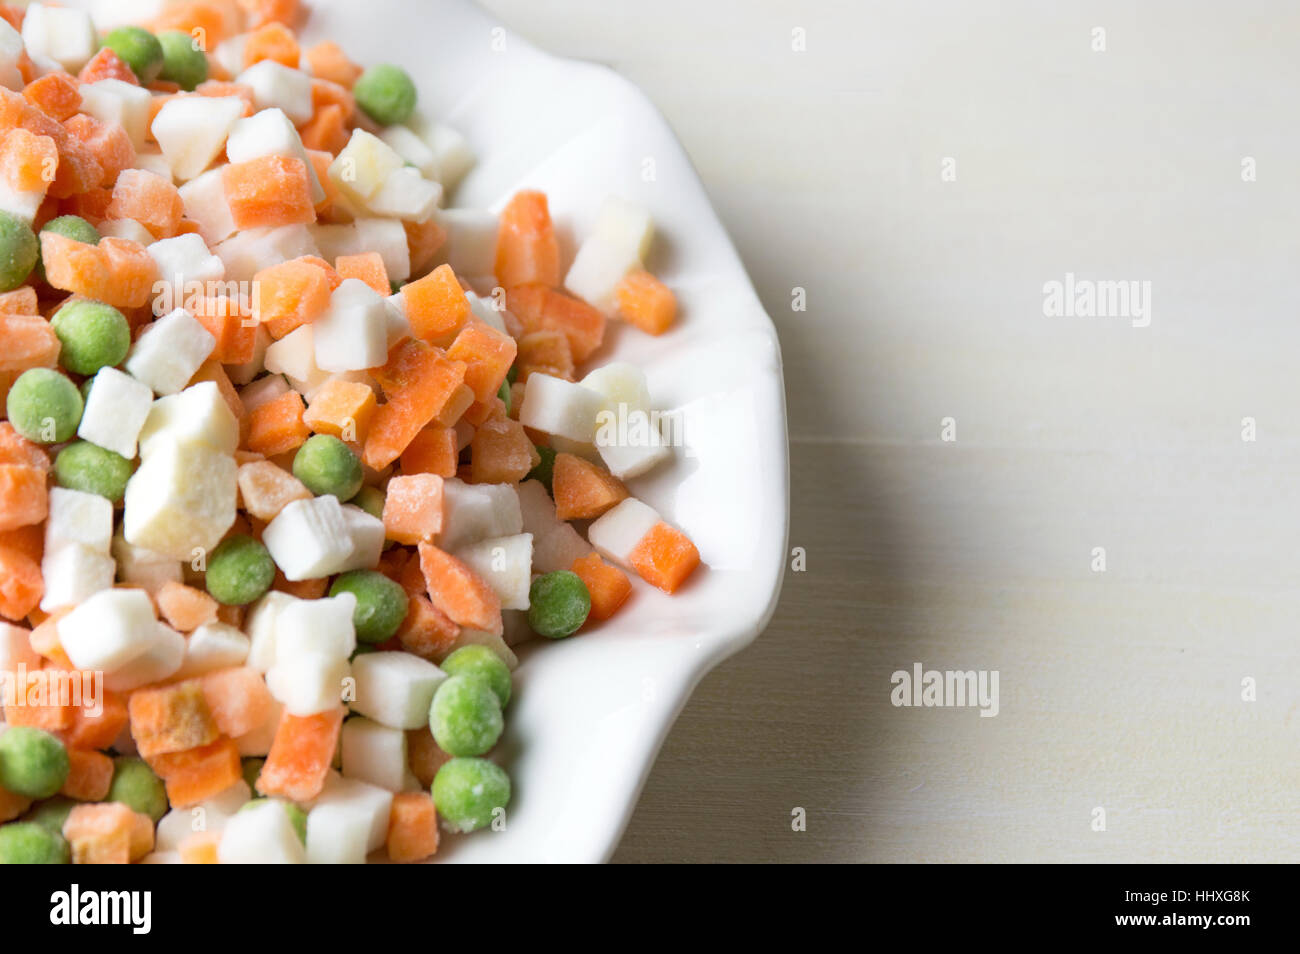 Les légumes congelés sur une plaque pour faire salad Banque D'Images